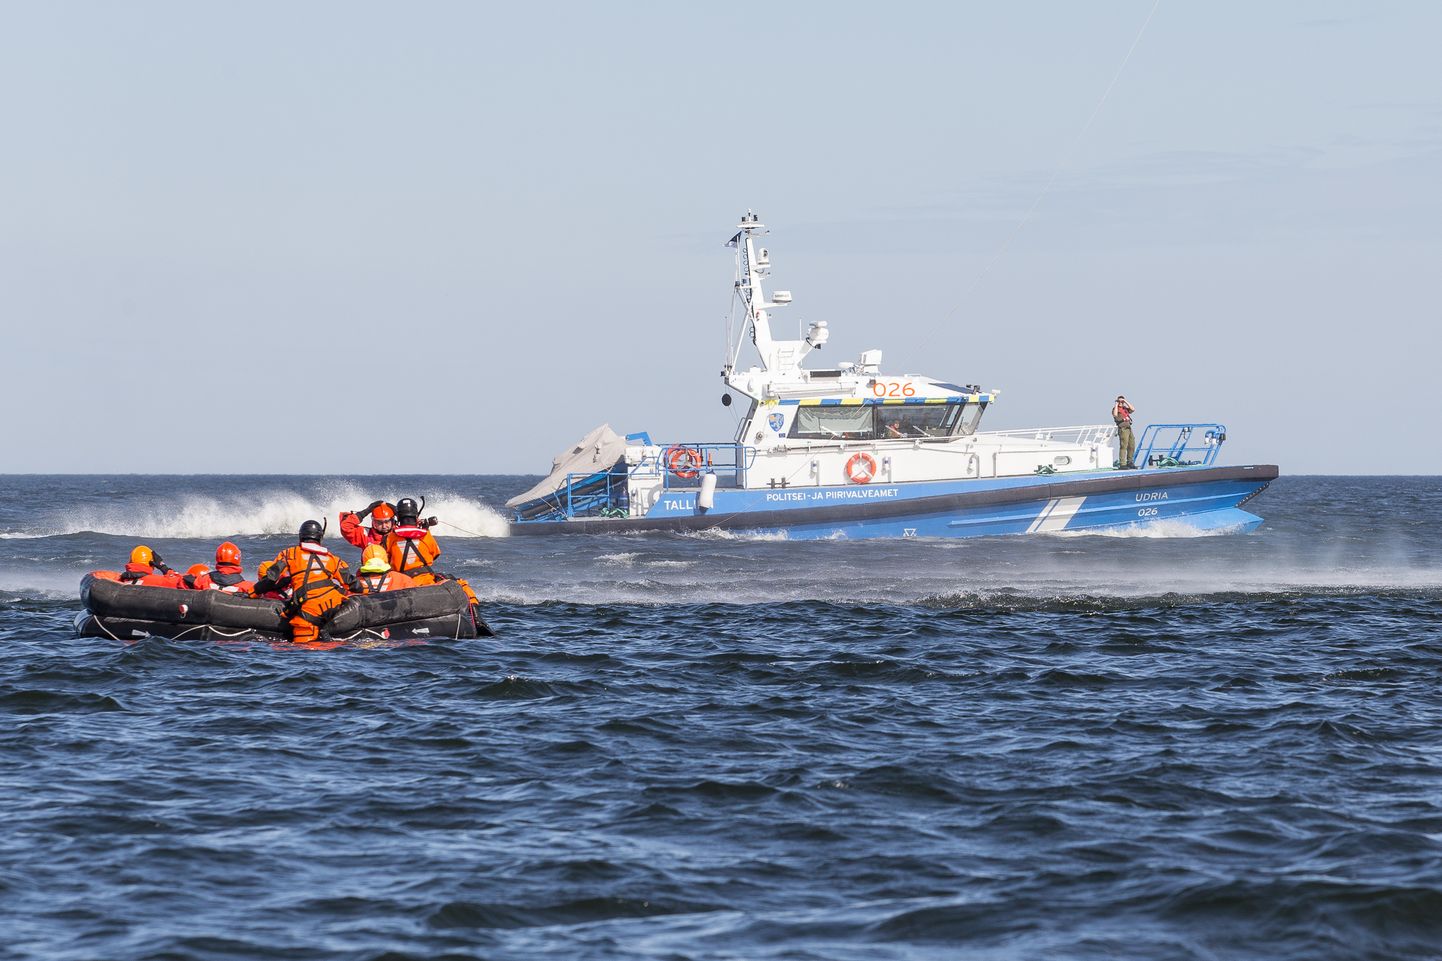 Tänavu augustis toimus Toilas merepäästeõppus, milles osalesid nii vabatahtlikud merepäästjad kui PPA. Nüüd on merepäästjate ja politseiameti koostööd varjutamas vaidlus toetusraha kasutamise sihipärasuse üle.